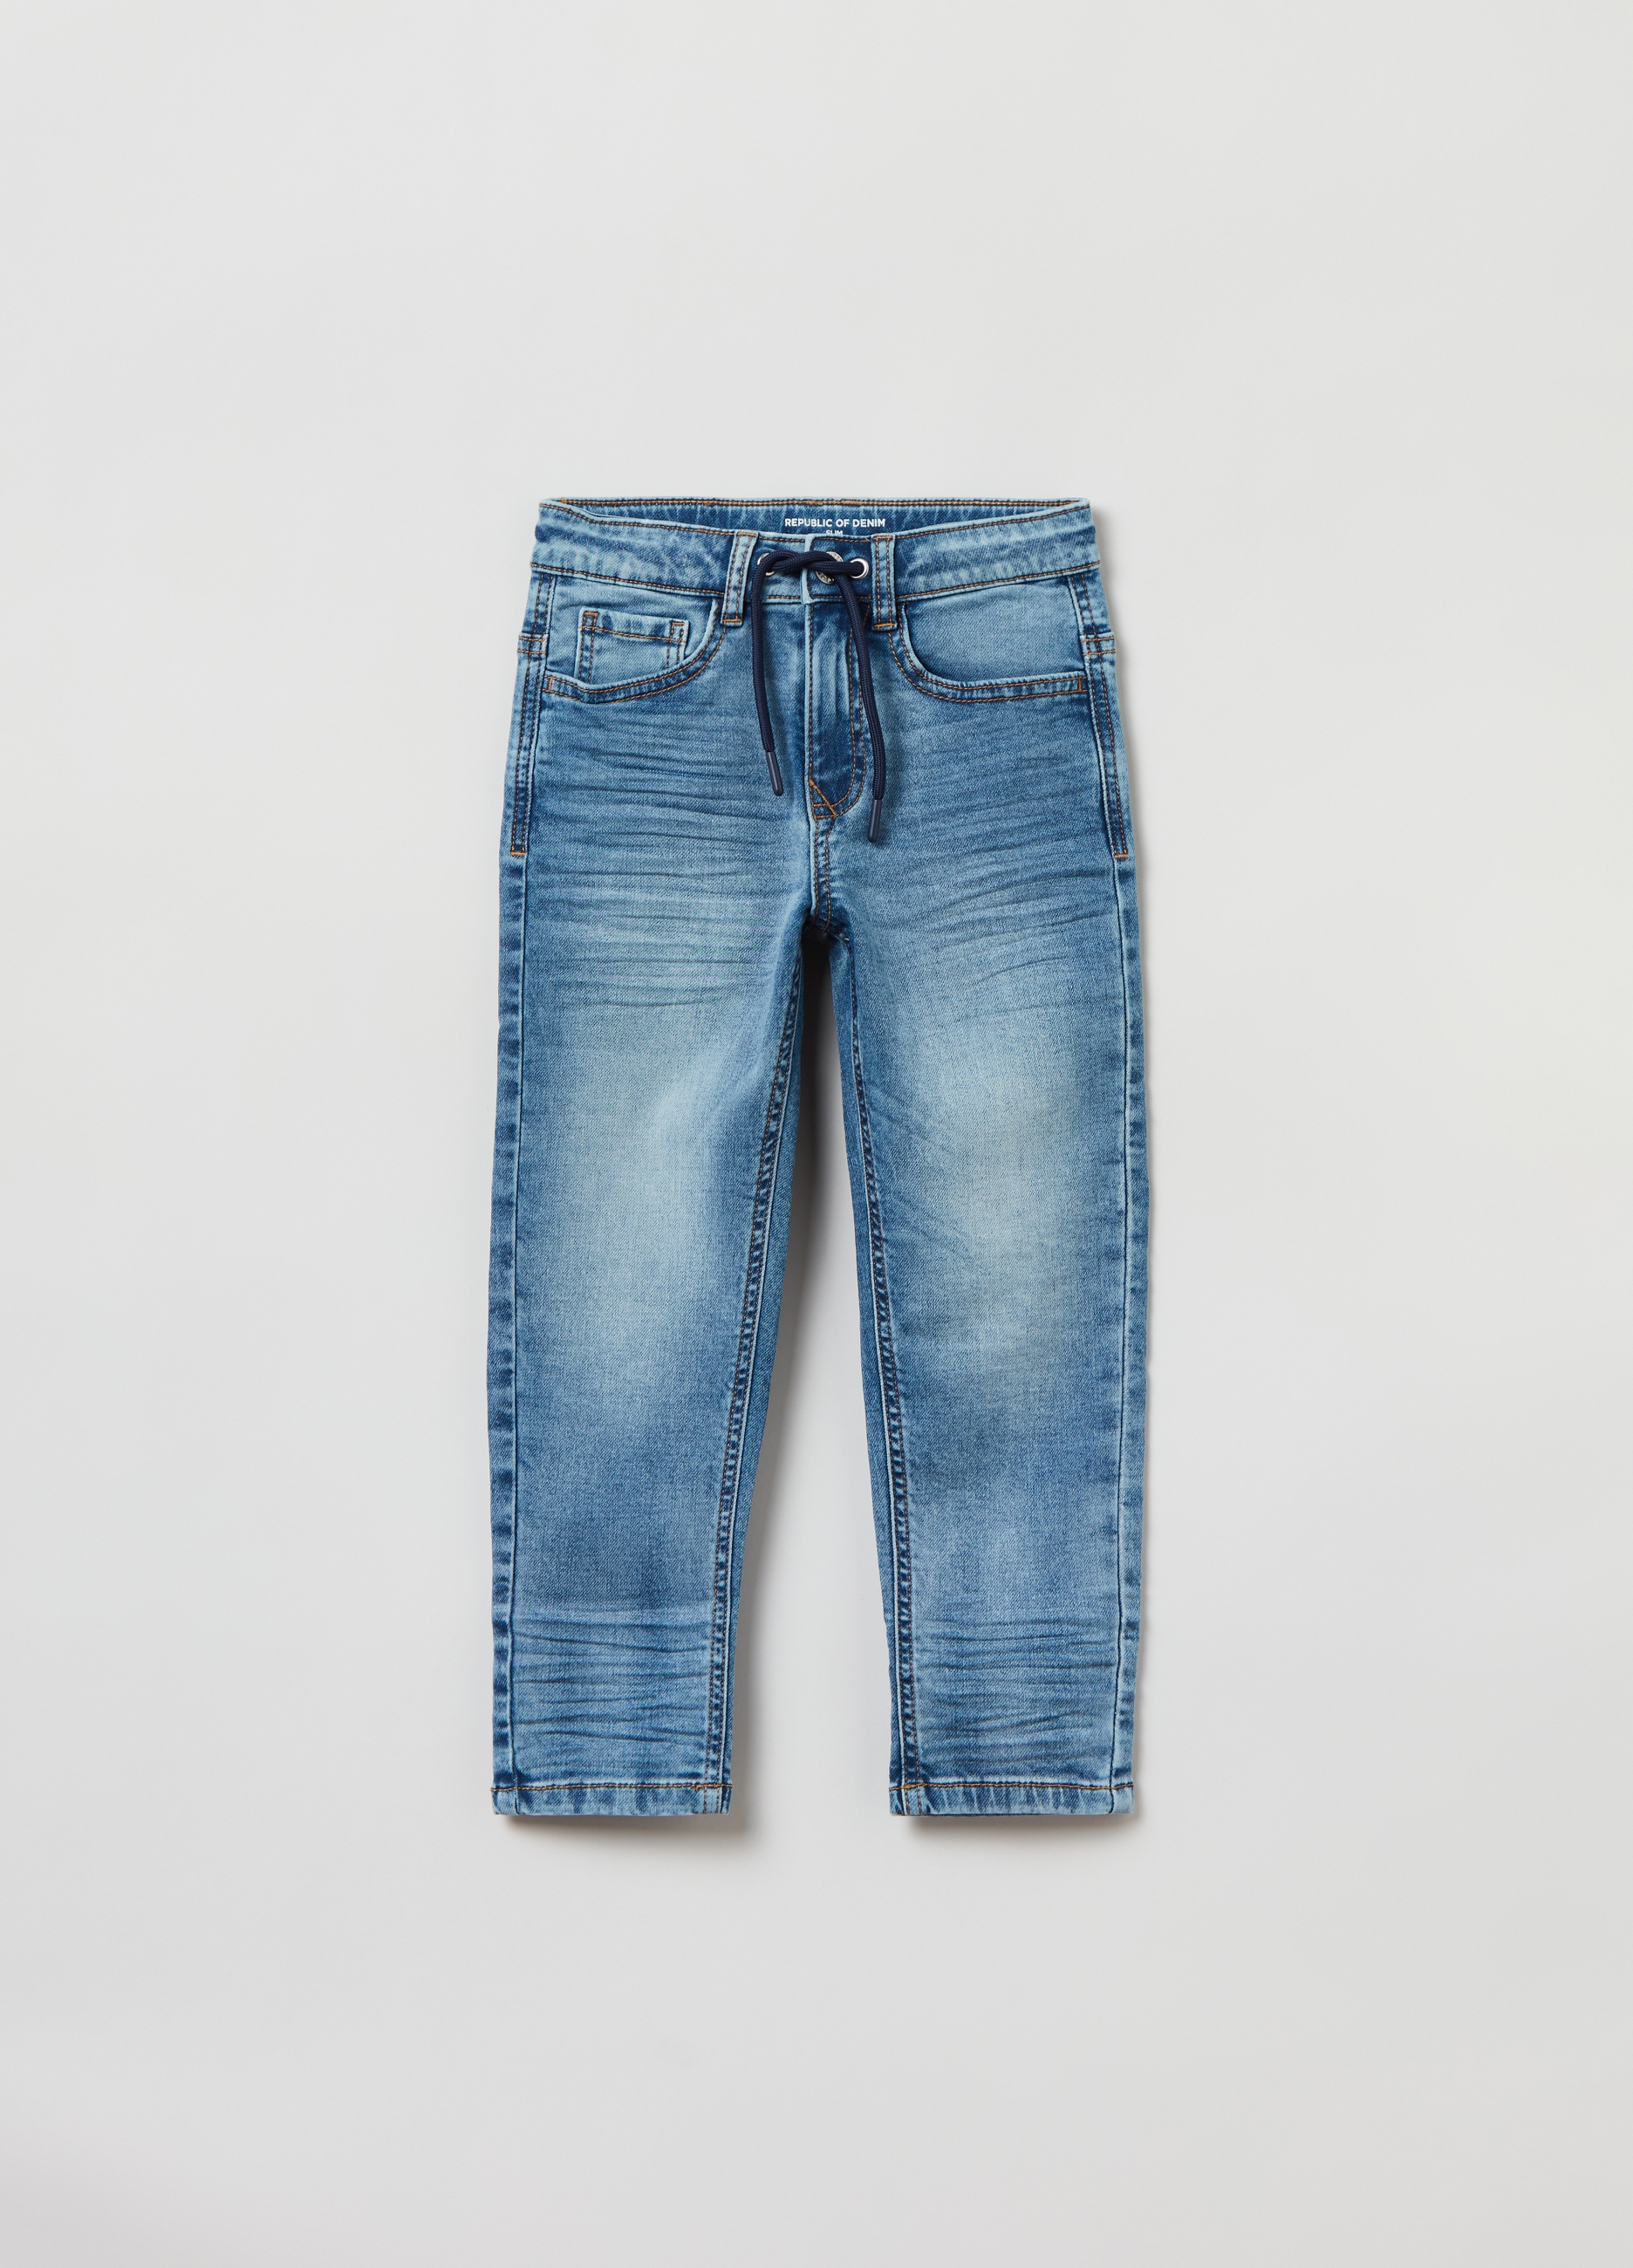 Джинсы OVS для мальчиков, голубые, 6-7 лет, 1823572 джинсы ovs для мальчиков голубые 9 10 лет 1823572